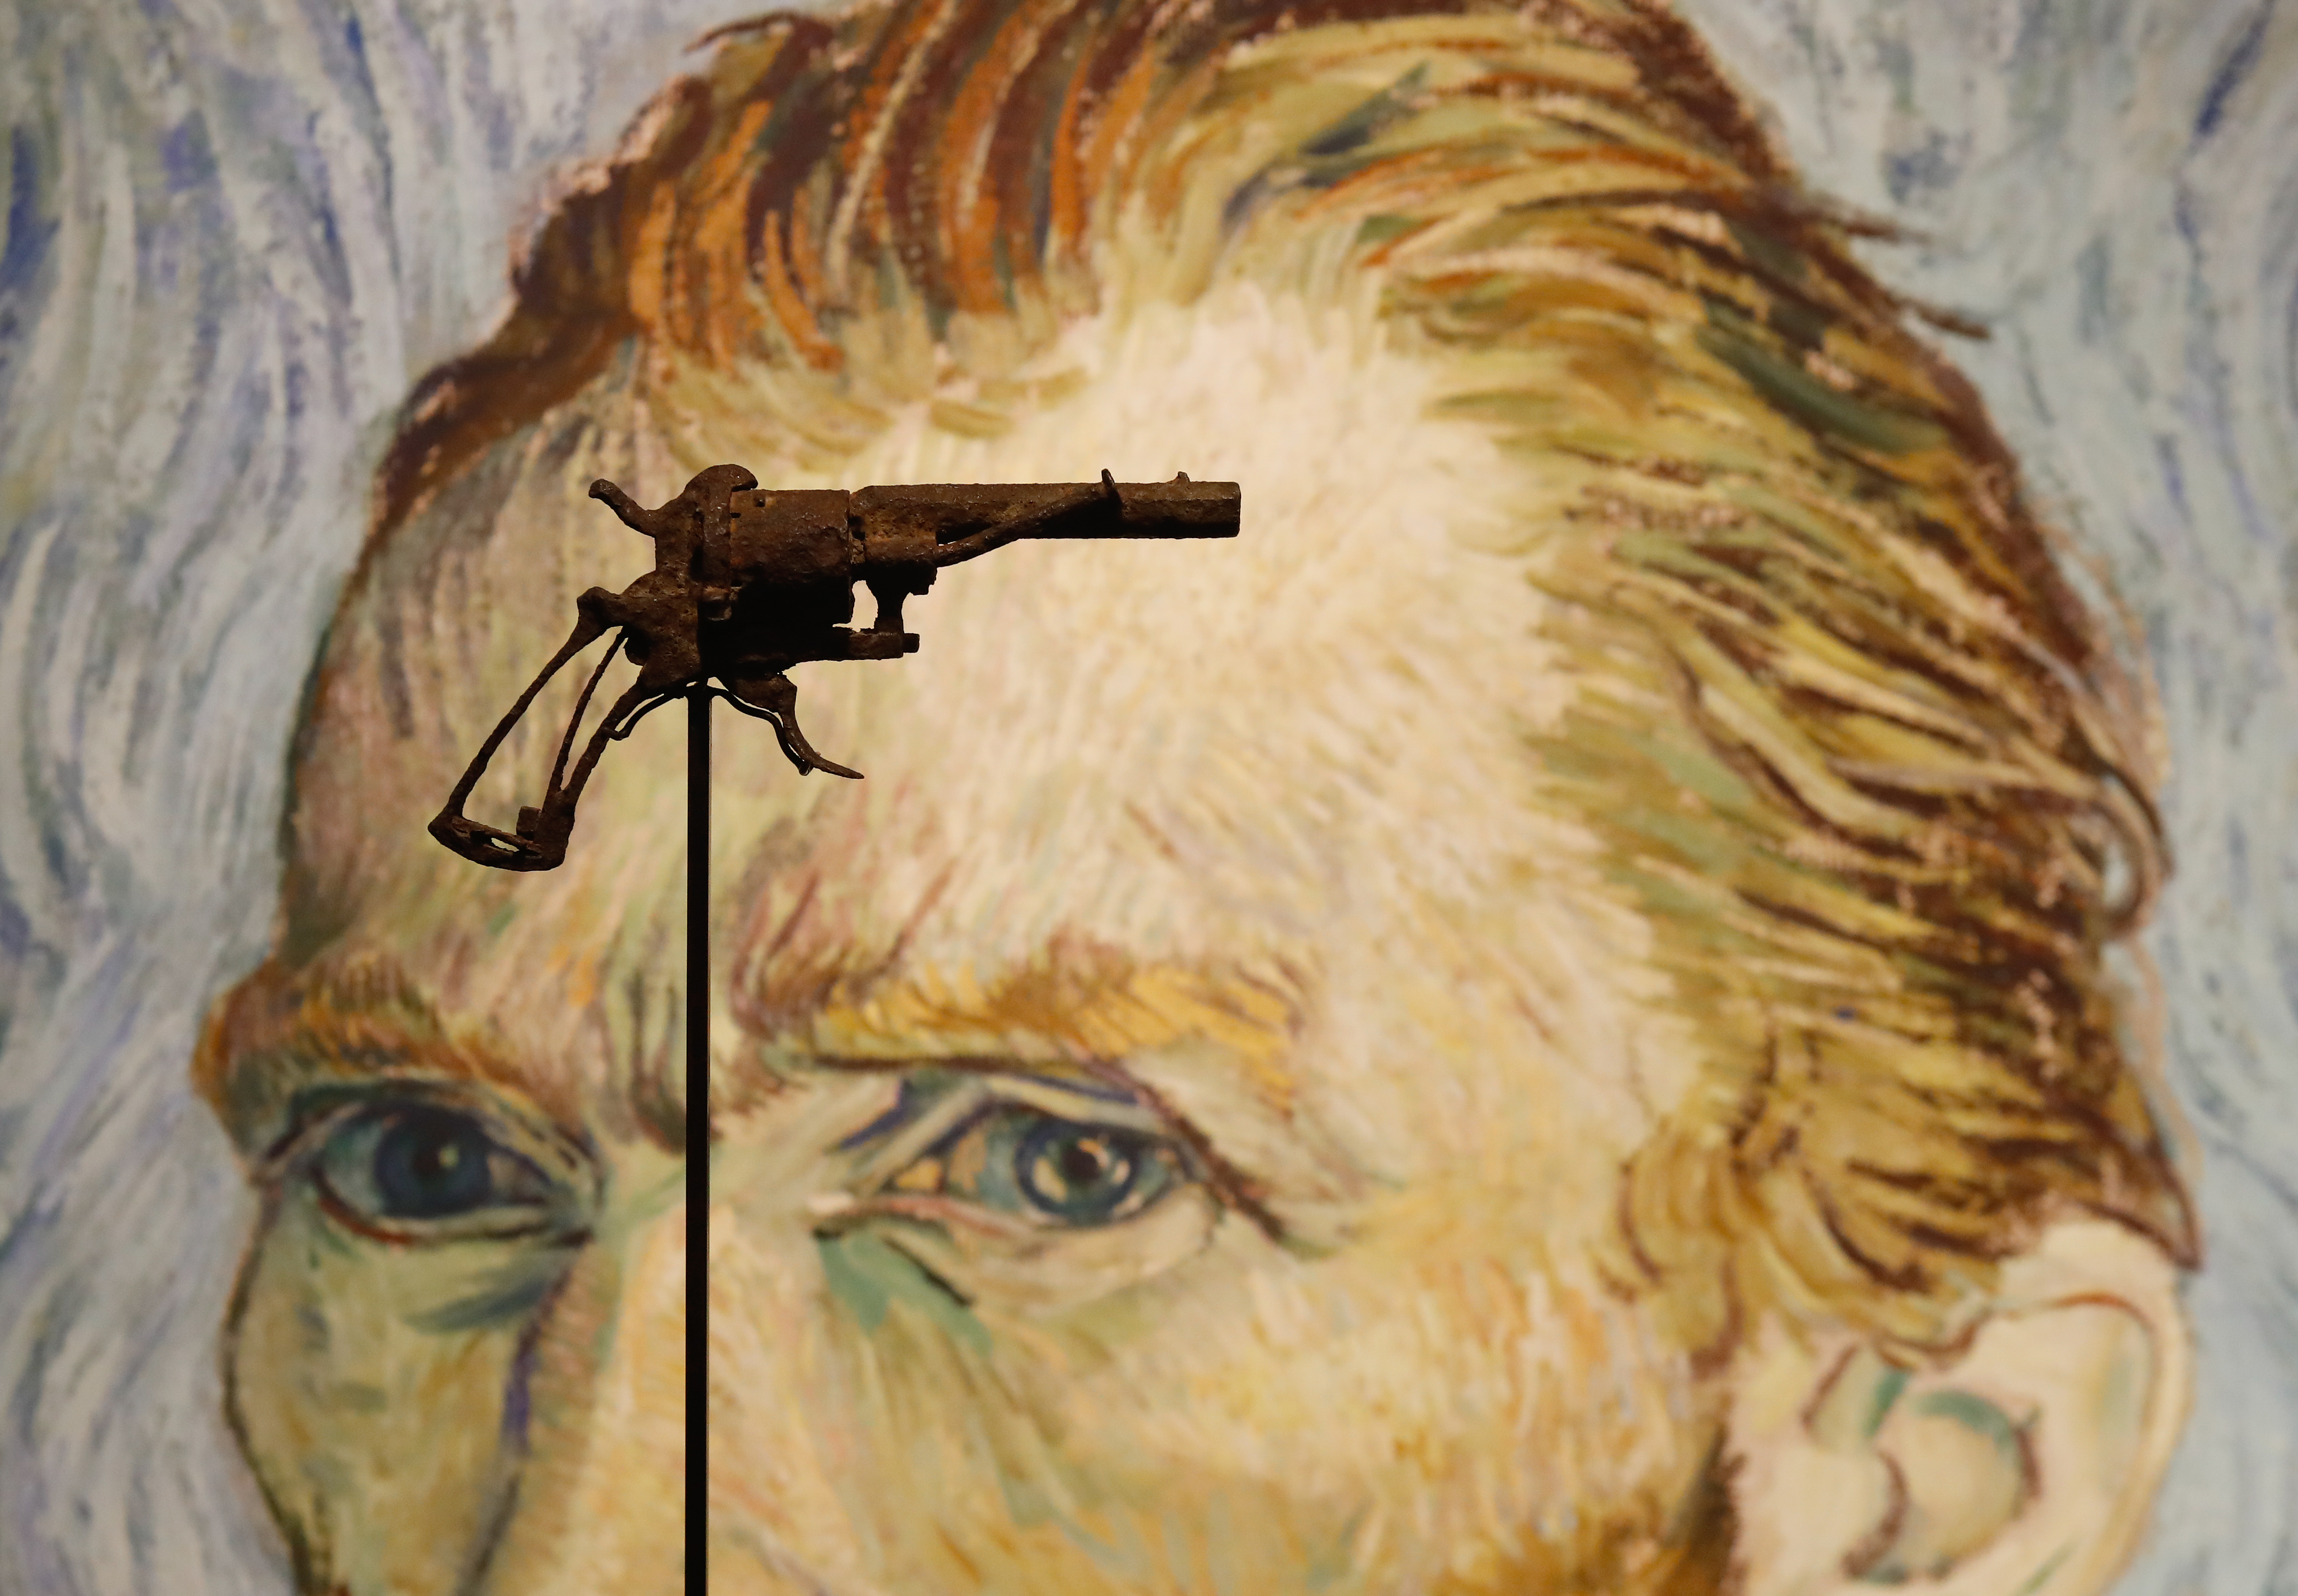 130 ezer euróért adták el a Van Gogh életét kioltó kézifegyvert